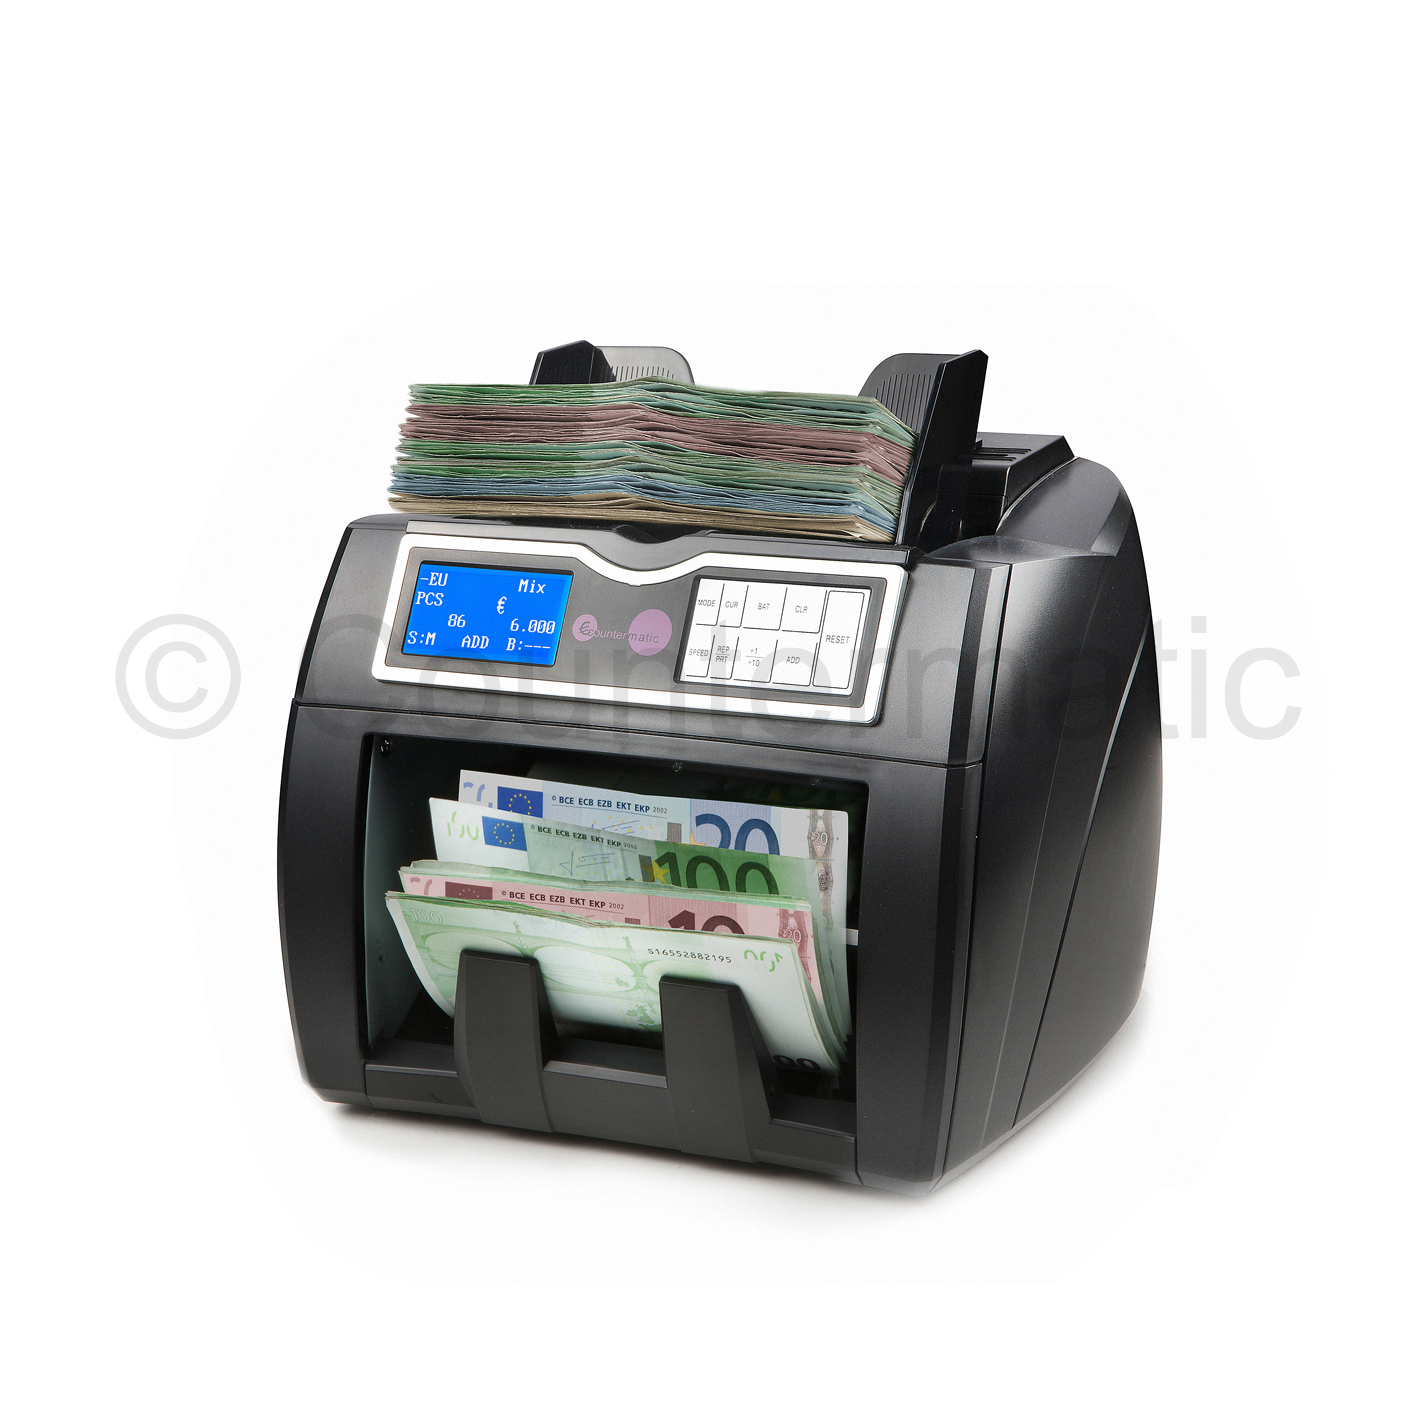 Importancia de la actualización en las máquinas de detectar billetes falsos